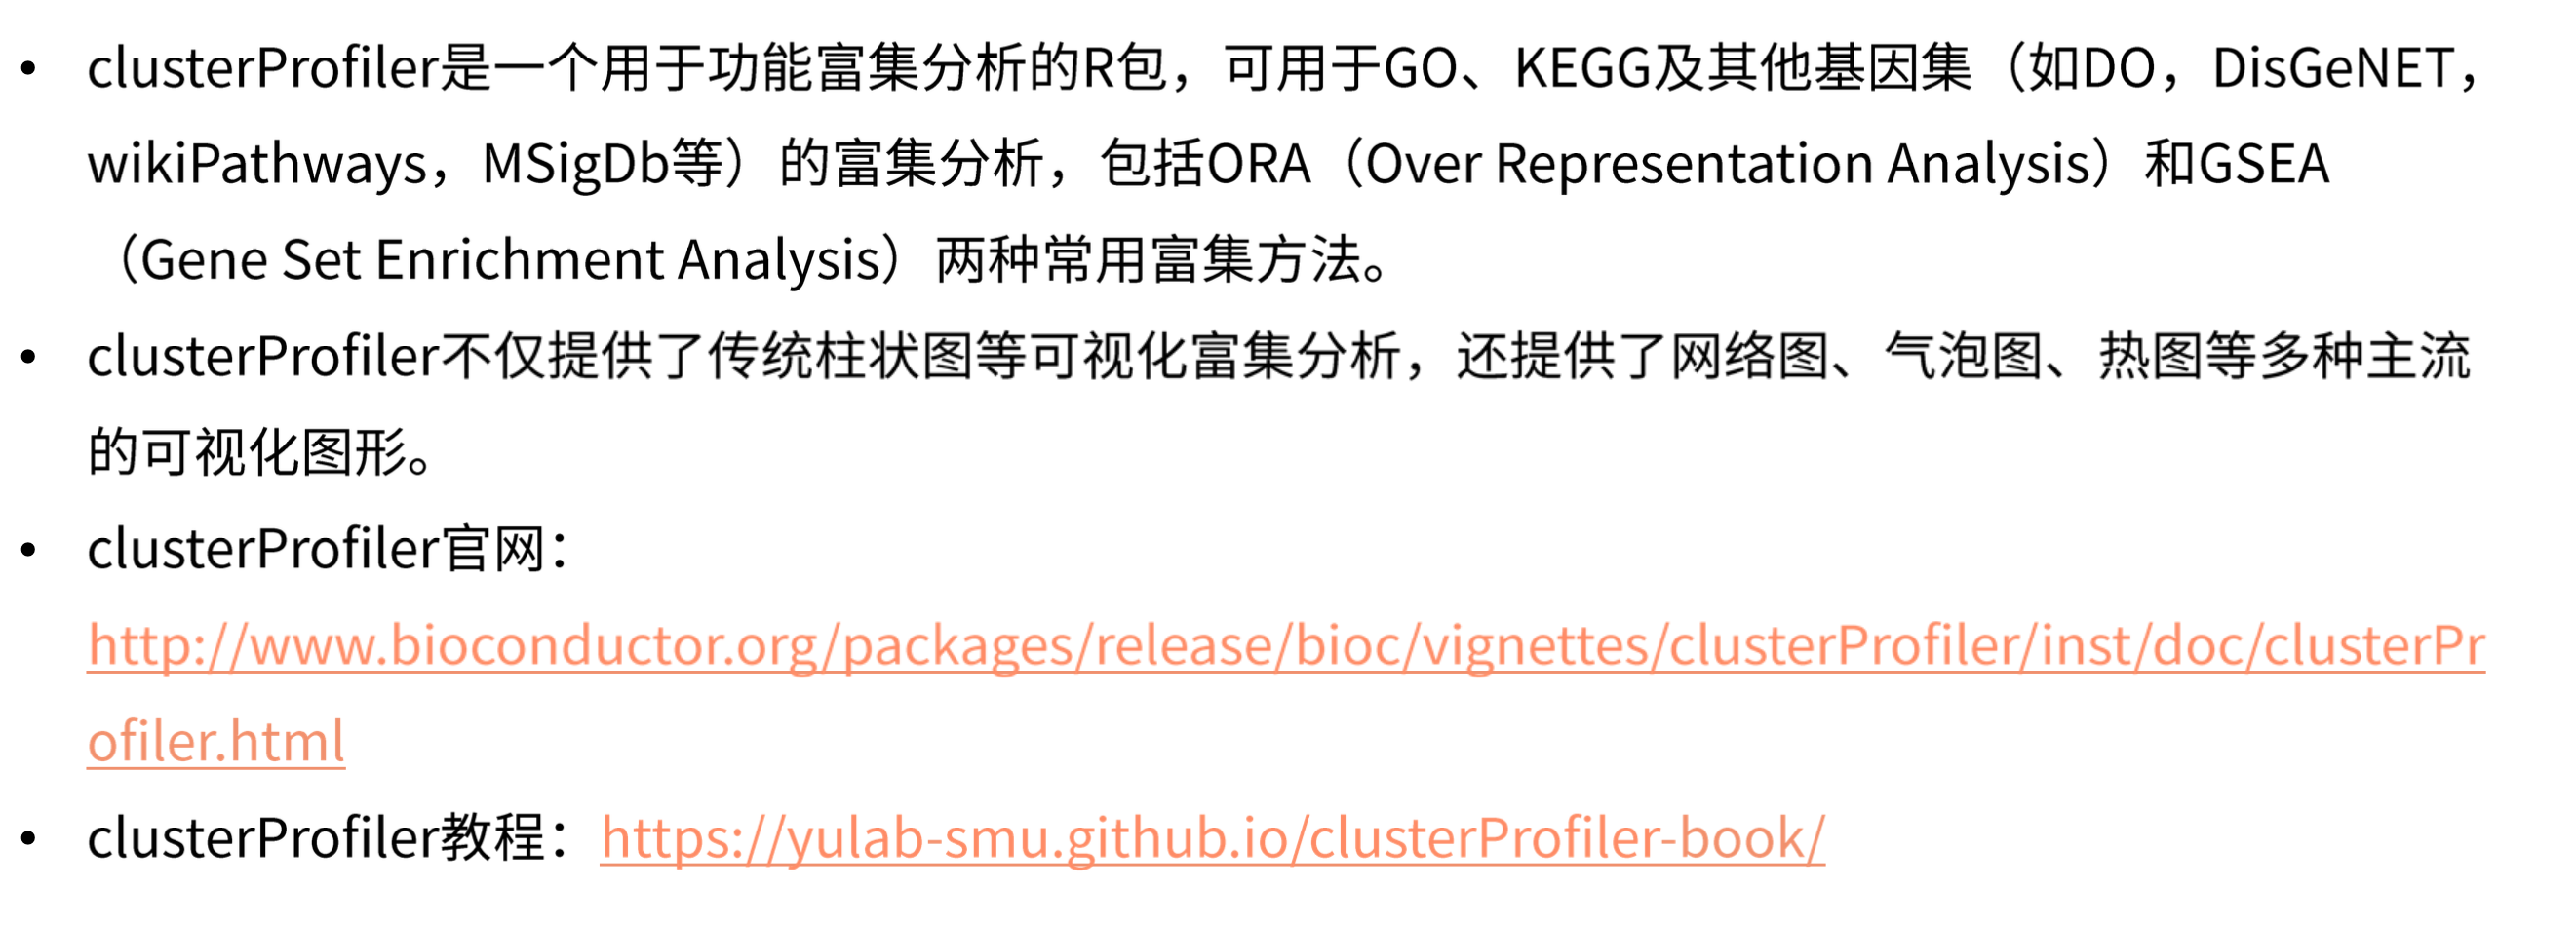 clusterprofiler简介.png